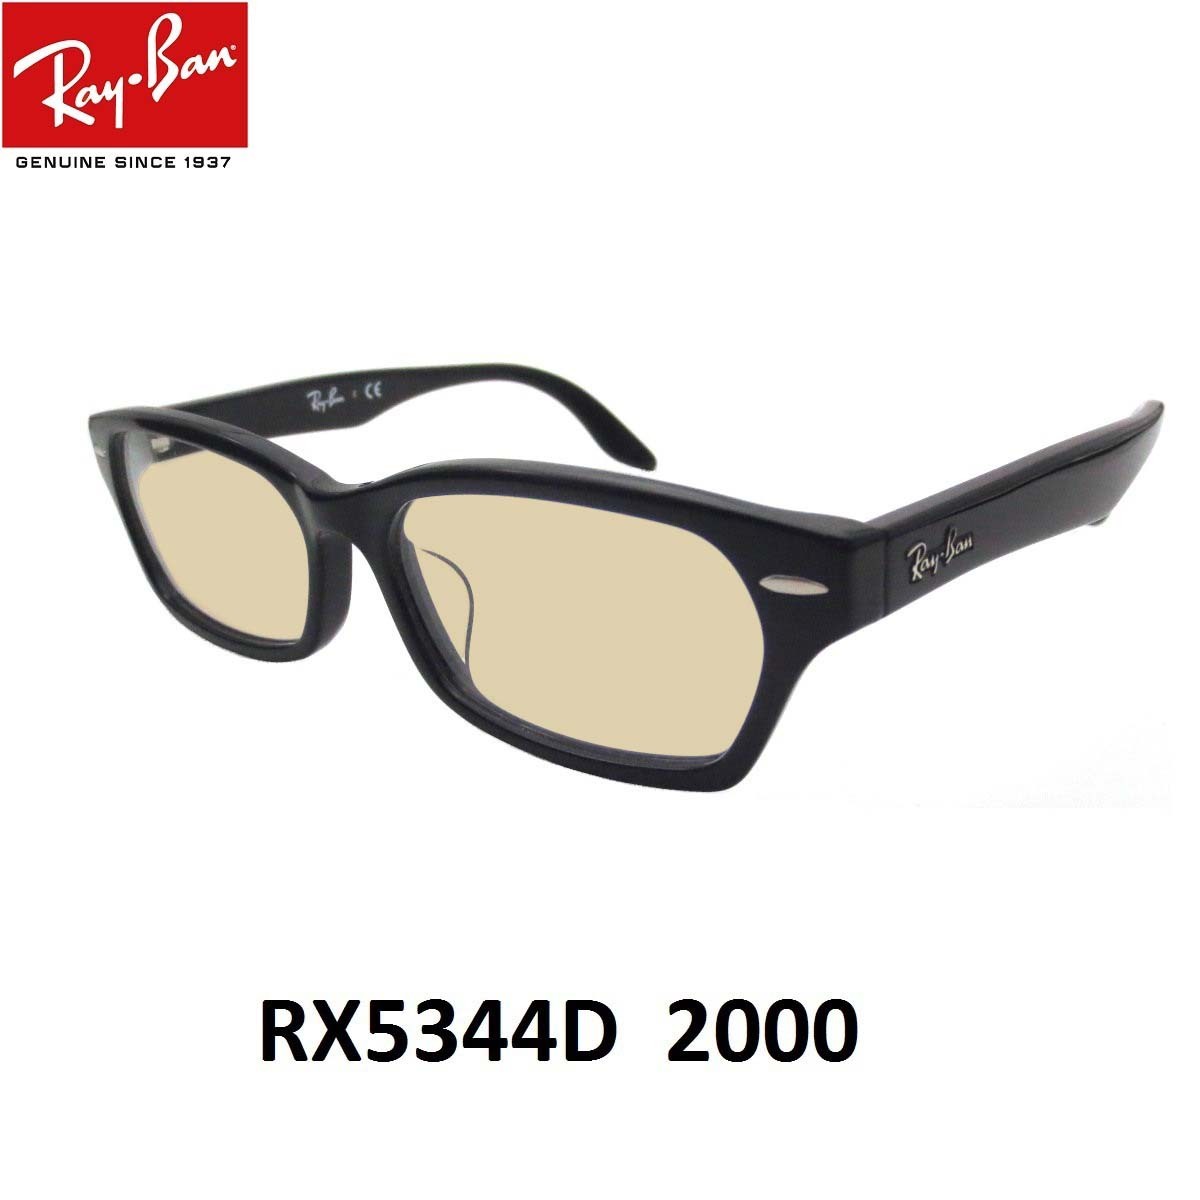 レイバン ライトカラー サングラス Ray-Ban RX5344D-2000 サイズ55ミリ アジア...